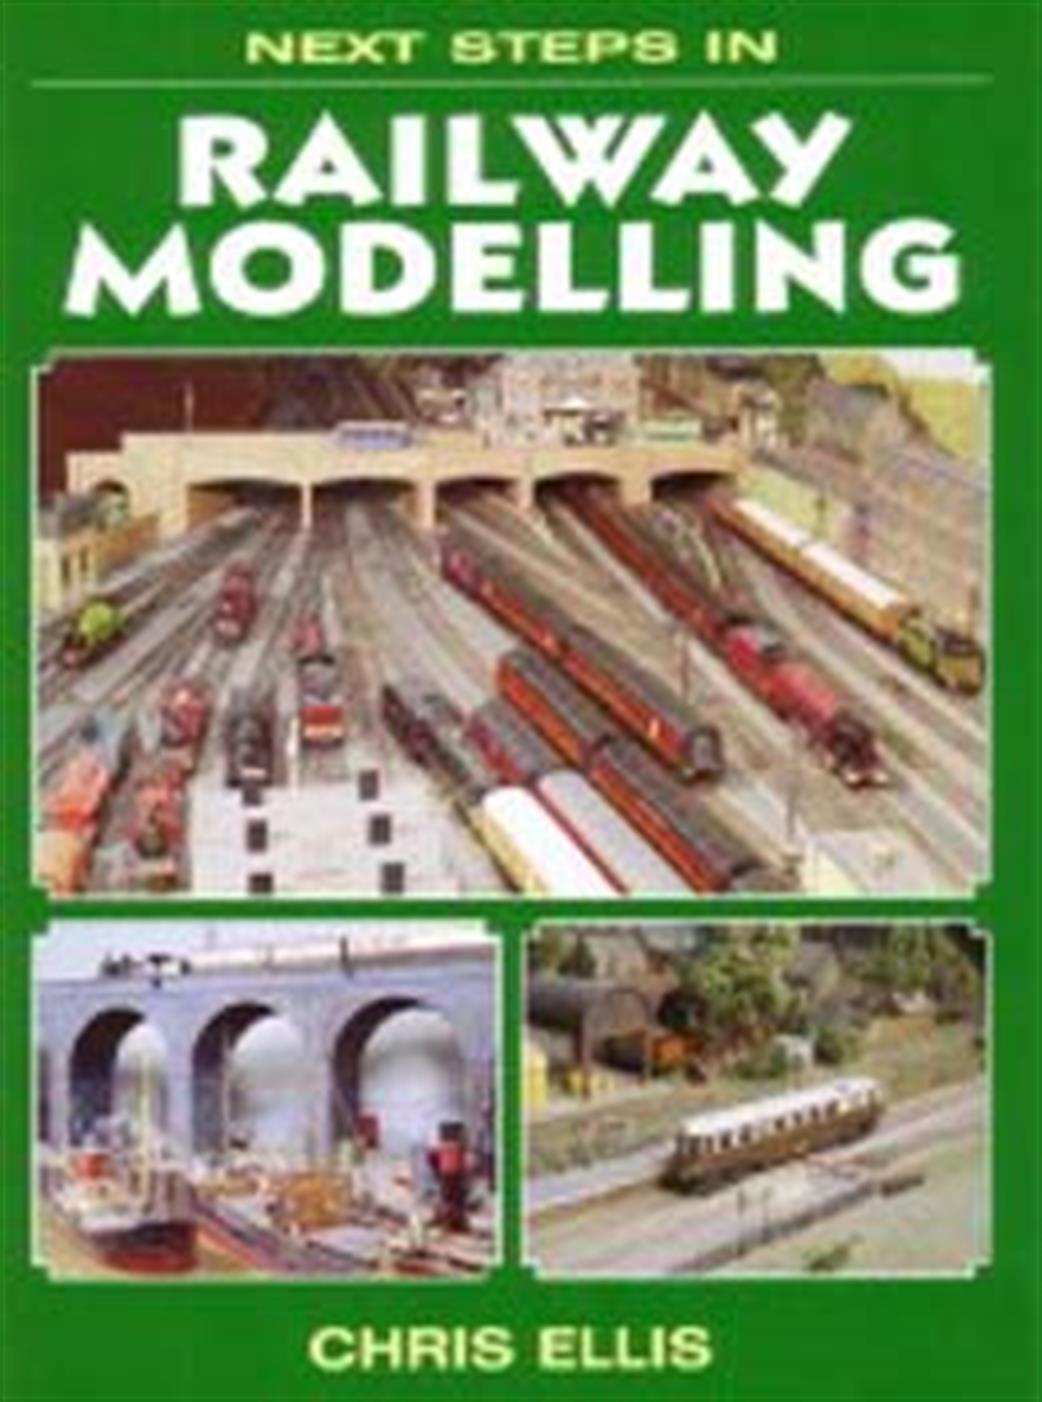 Ian Allan Publishing 9781857801712 Next Steps in Railway Modelling